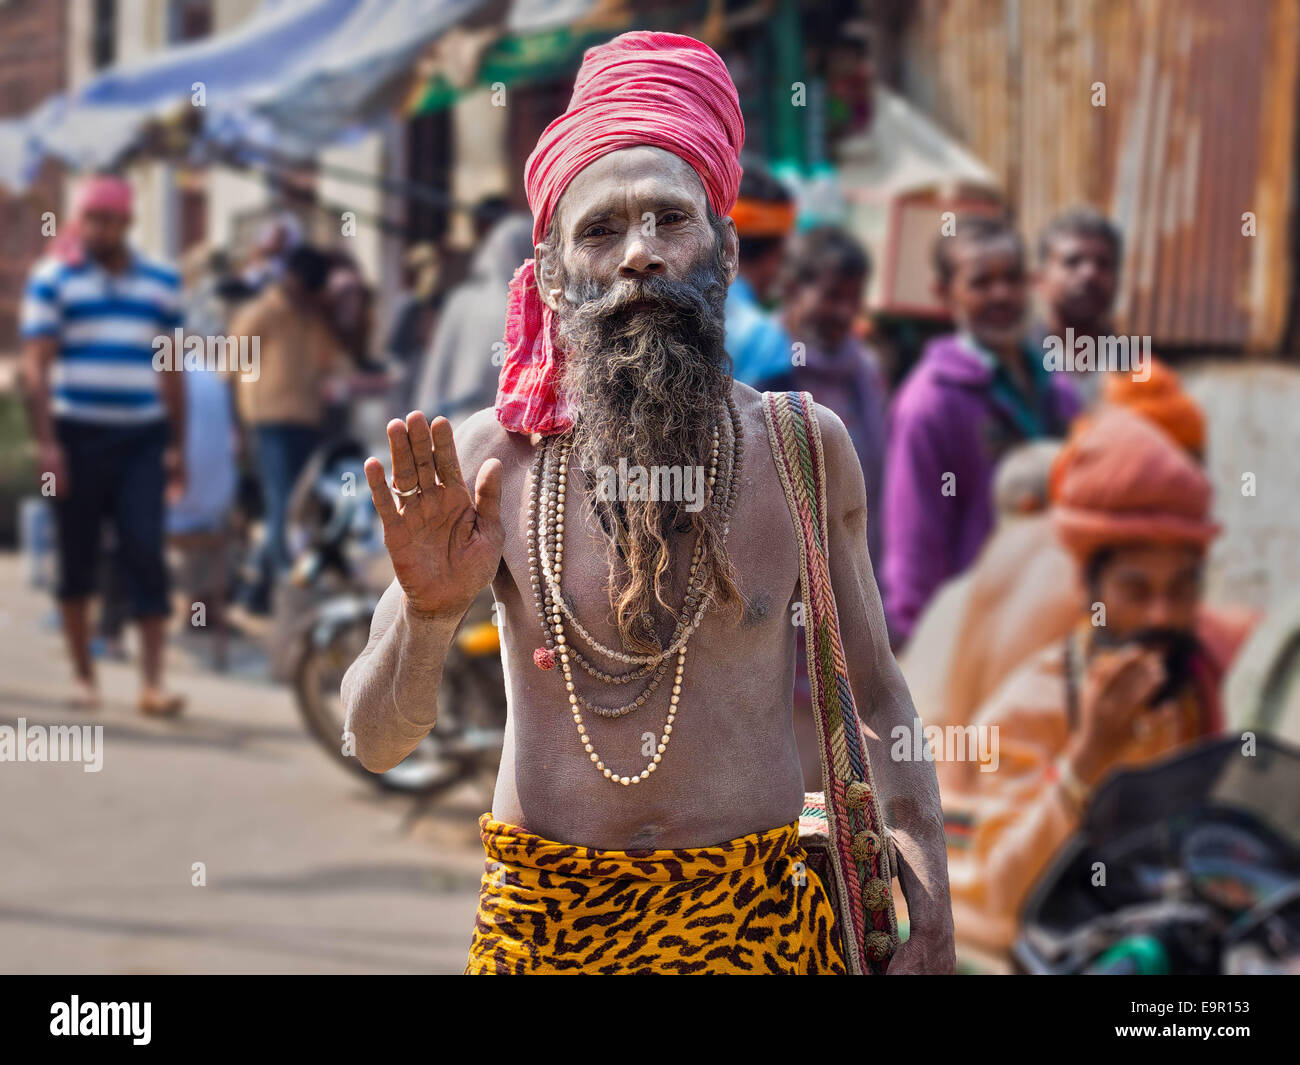 Porträt eines Sadhu (indischer heiliger Mann) in Asche bedeckt und tragen bunte Kleidung auf einer belebten Straße in Varanasi, Indien. Stockfoto